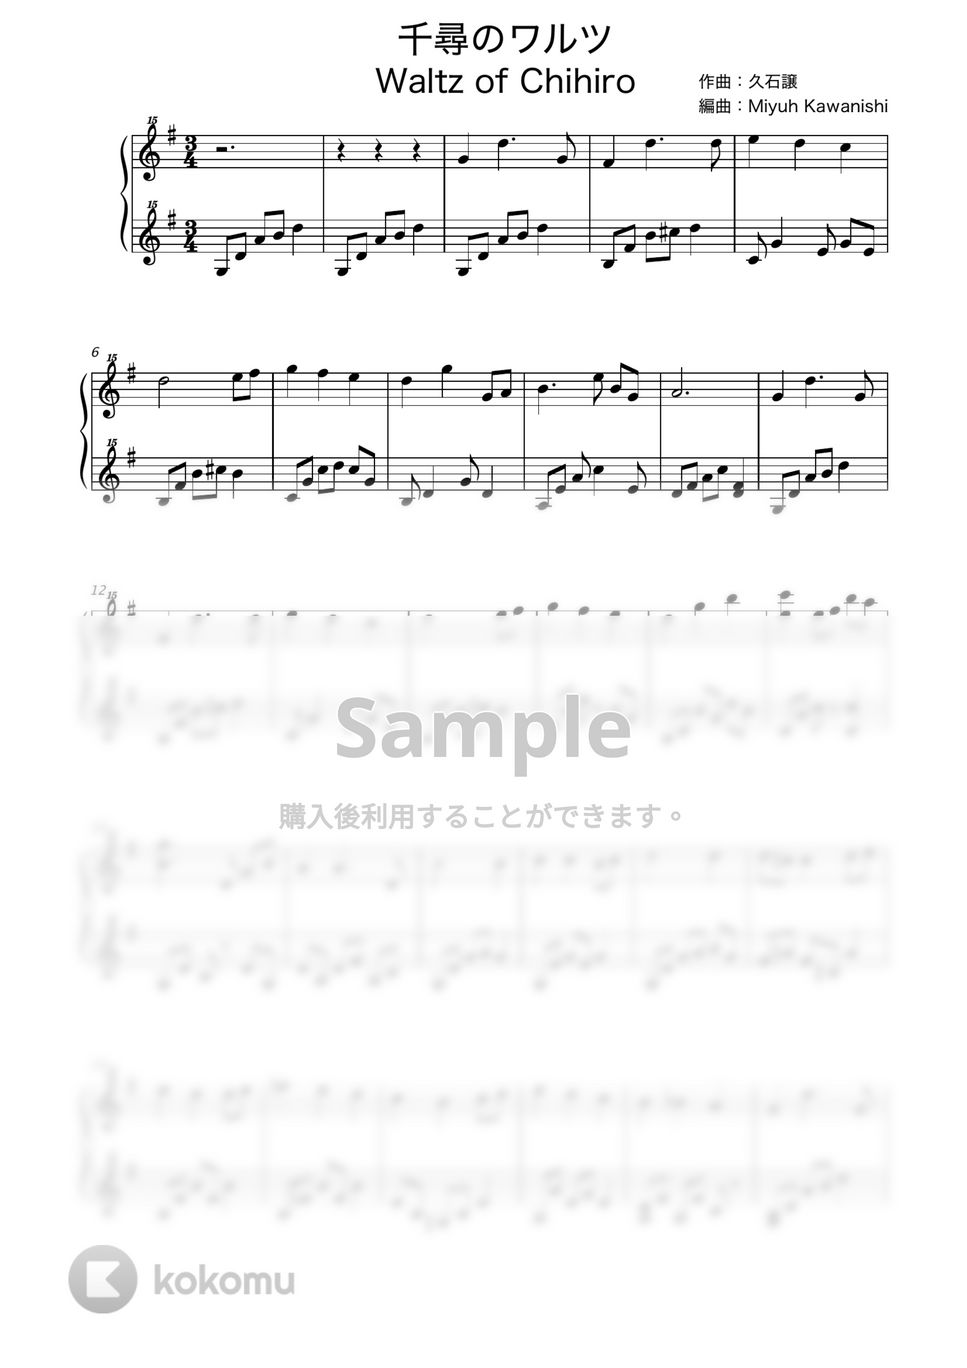 久石譲 - 千尋のワルツ (トイピアノ / 32鍵盤 / ジブリ / 千と千尋の神隠し) by 川西三裕